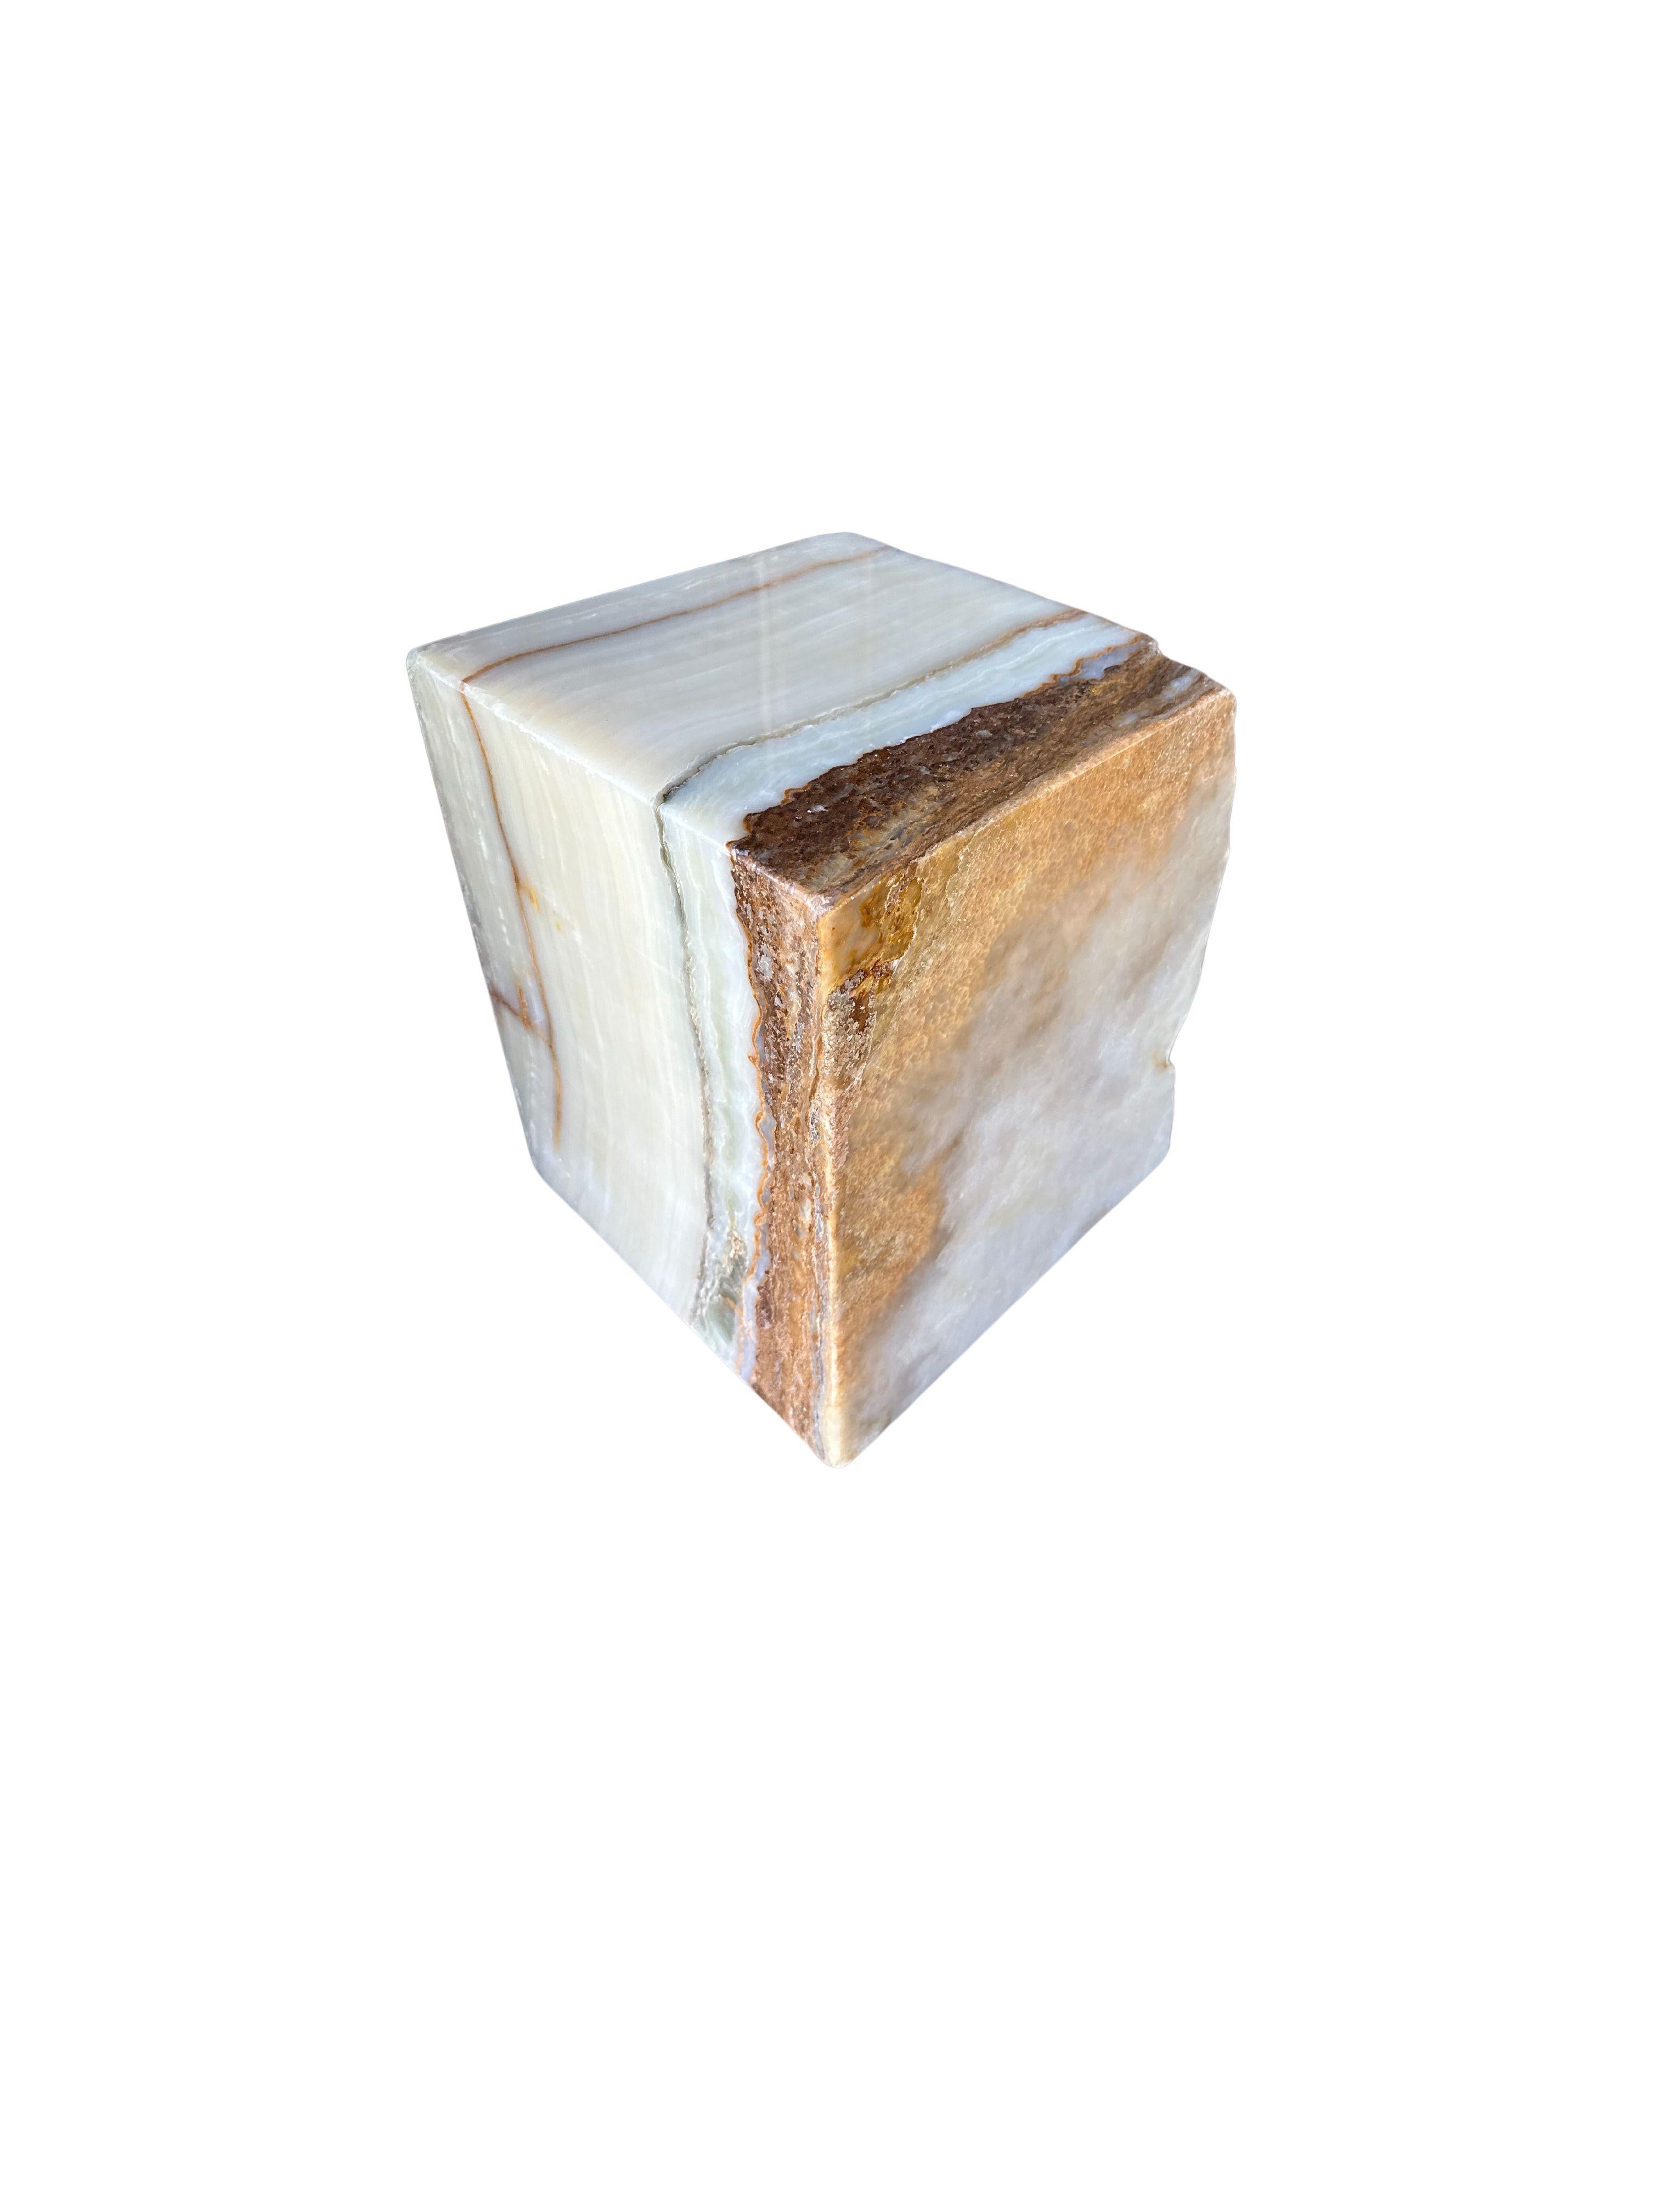 Ein massiver Marmorblock aus Jupiter Onyx, der sich wunderbar als Beistelltisch oder Sockel eignet. Dieses rohe und organische Objekt mit erdigen Untertönen stammt von der Insel Sumatra und zeichnet sich durch eine beeindruckende Mischung aus